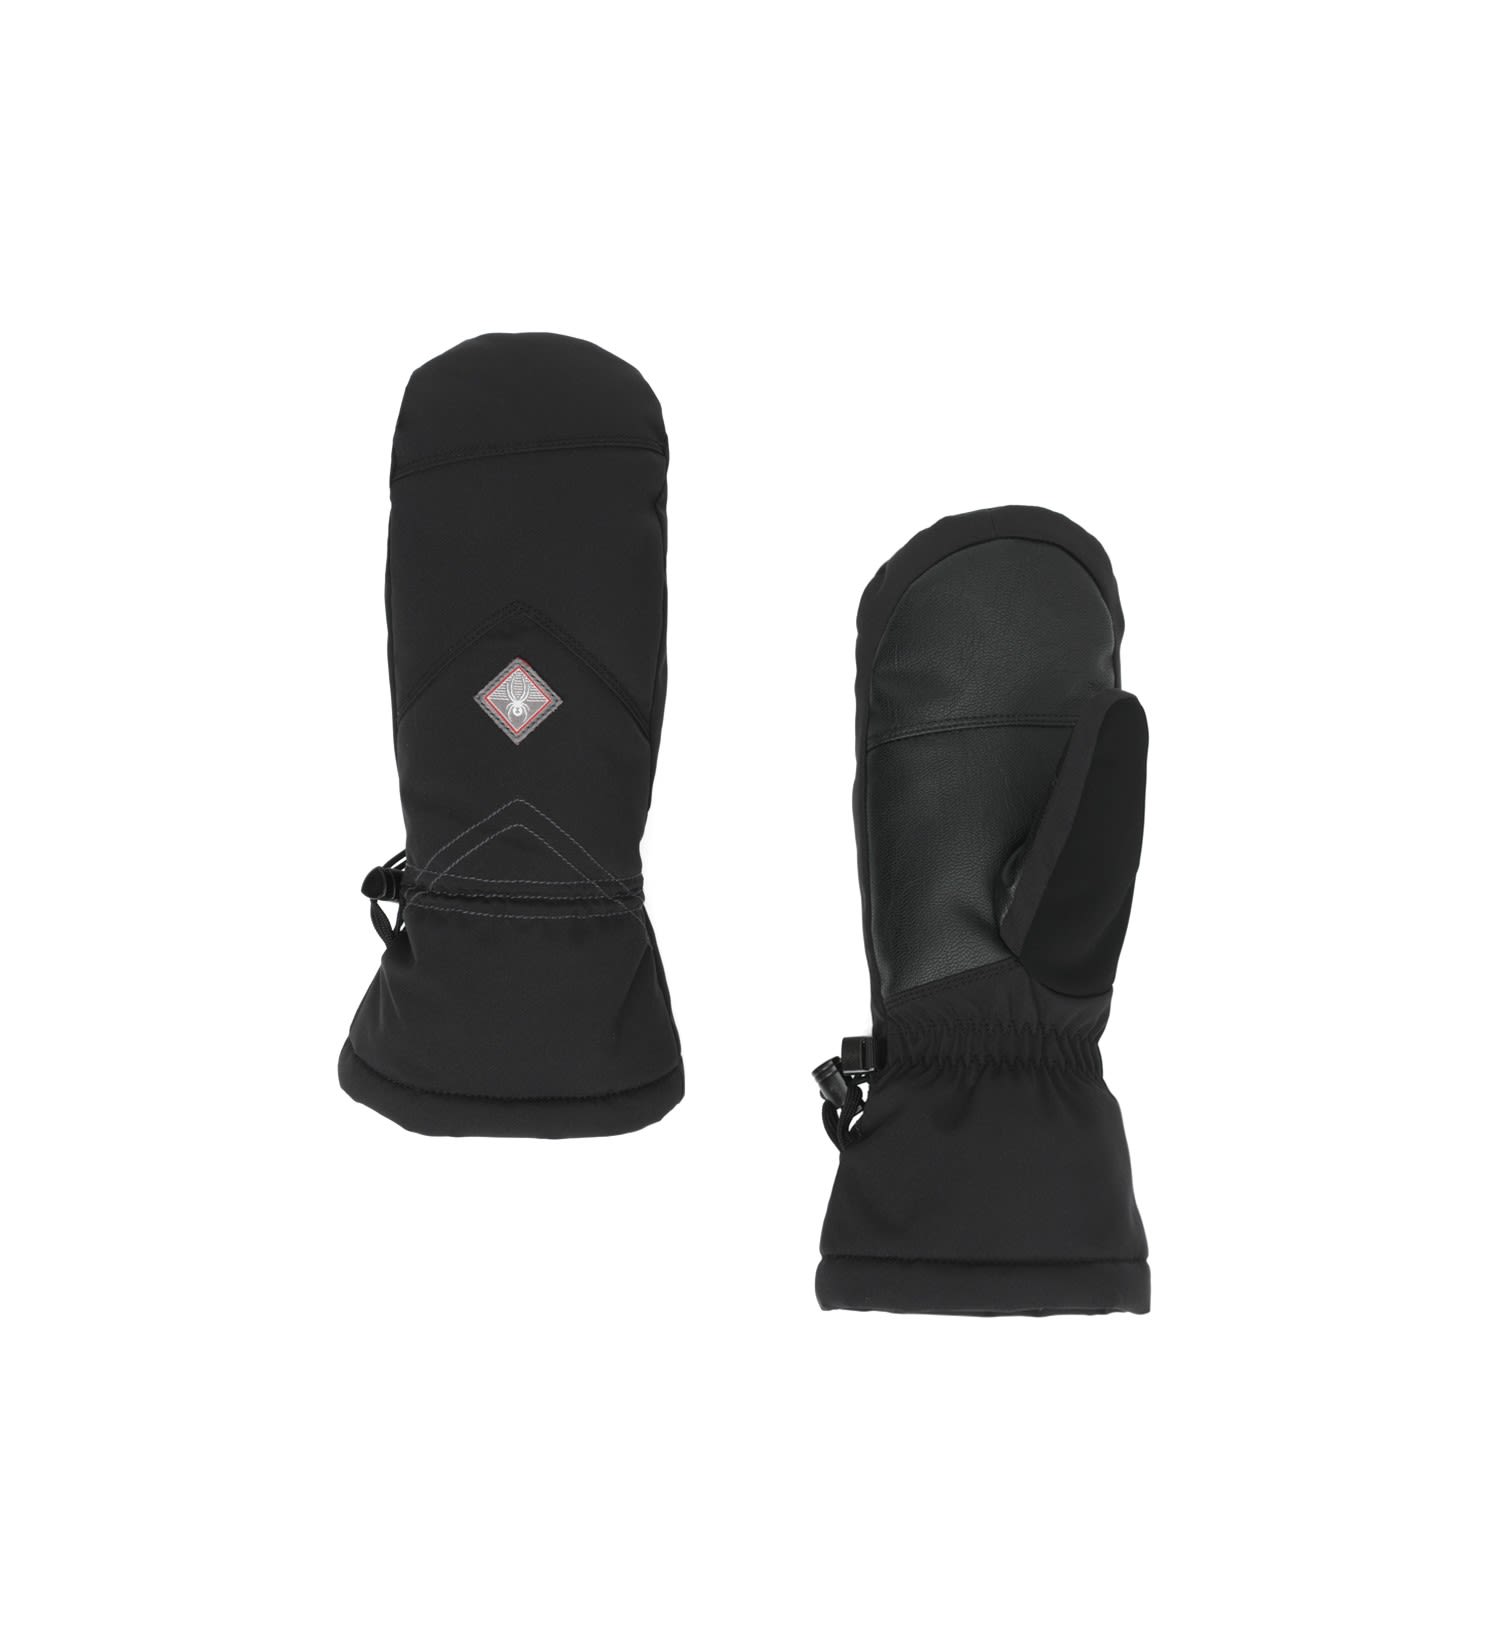 Spyder Inspire Ski Glove Schwarz- Female Daunen Fausthandschuhe- Grsse S - Farbe Black